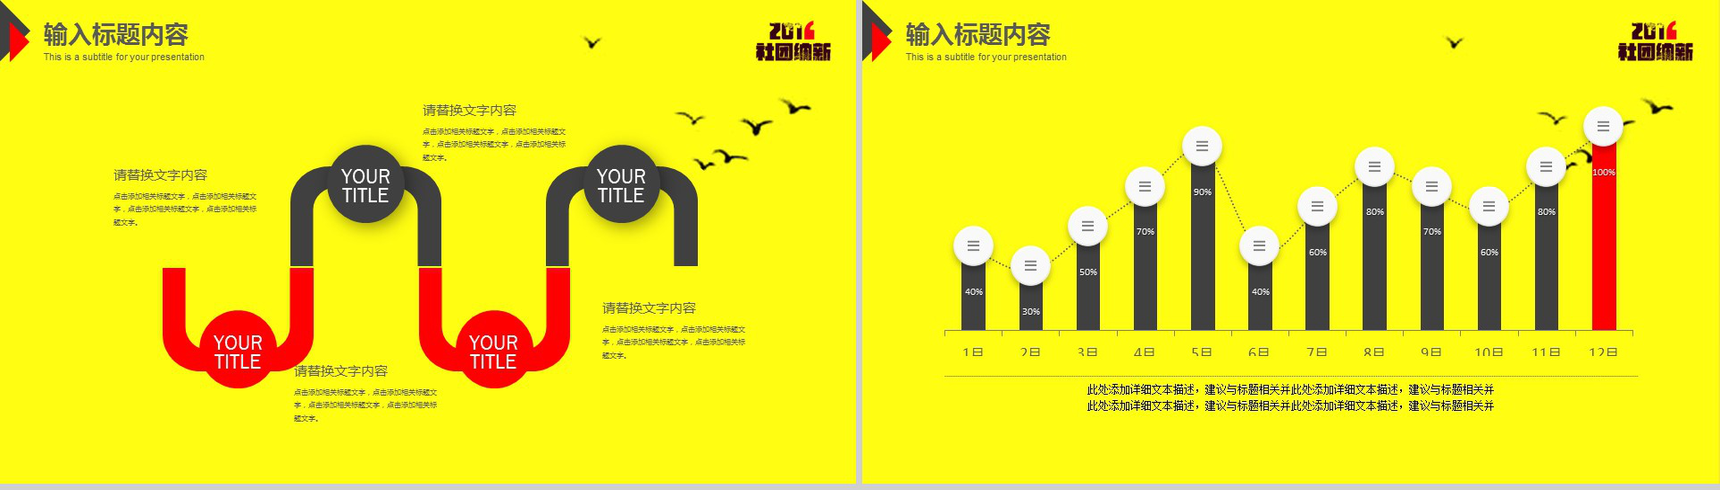 黄色水墨风学生会社团纳新宣传介绍动态PPT模板-12